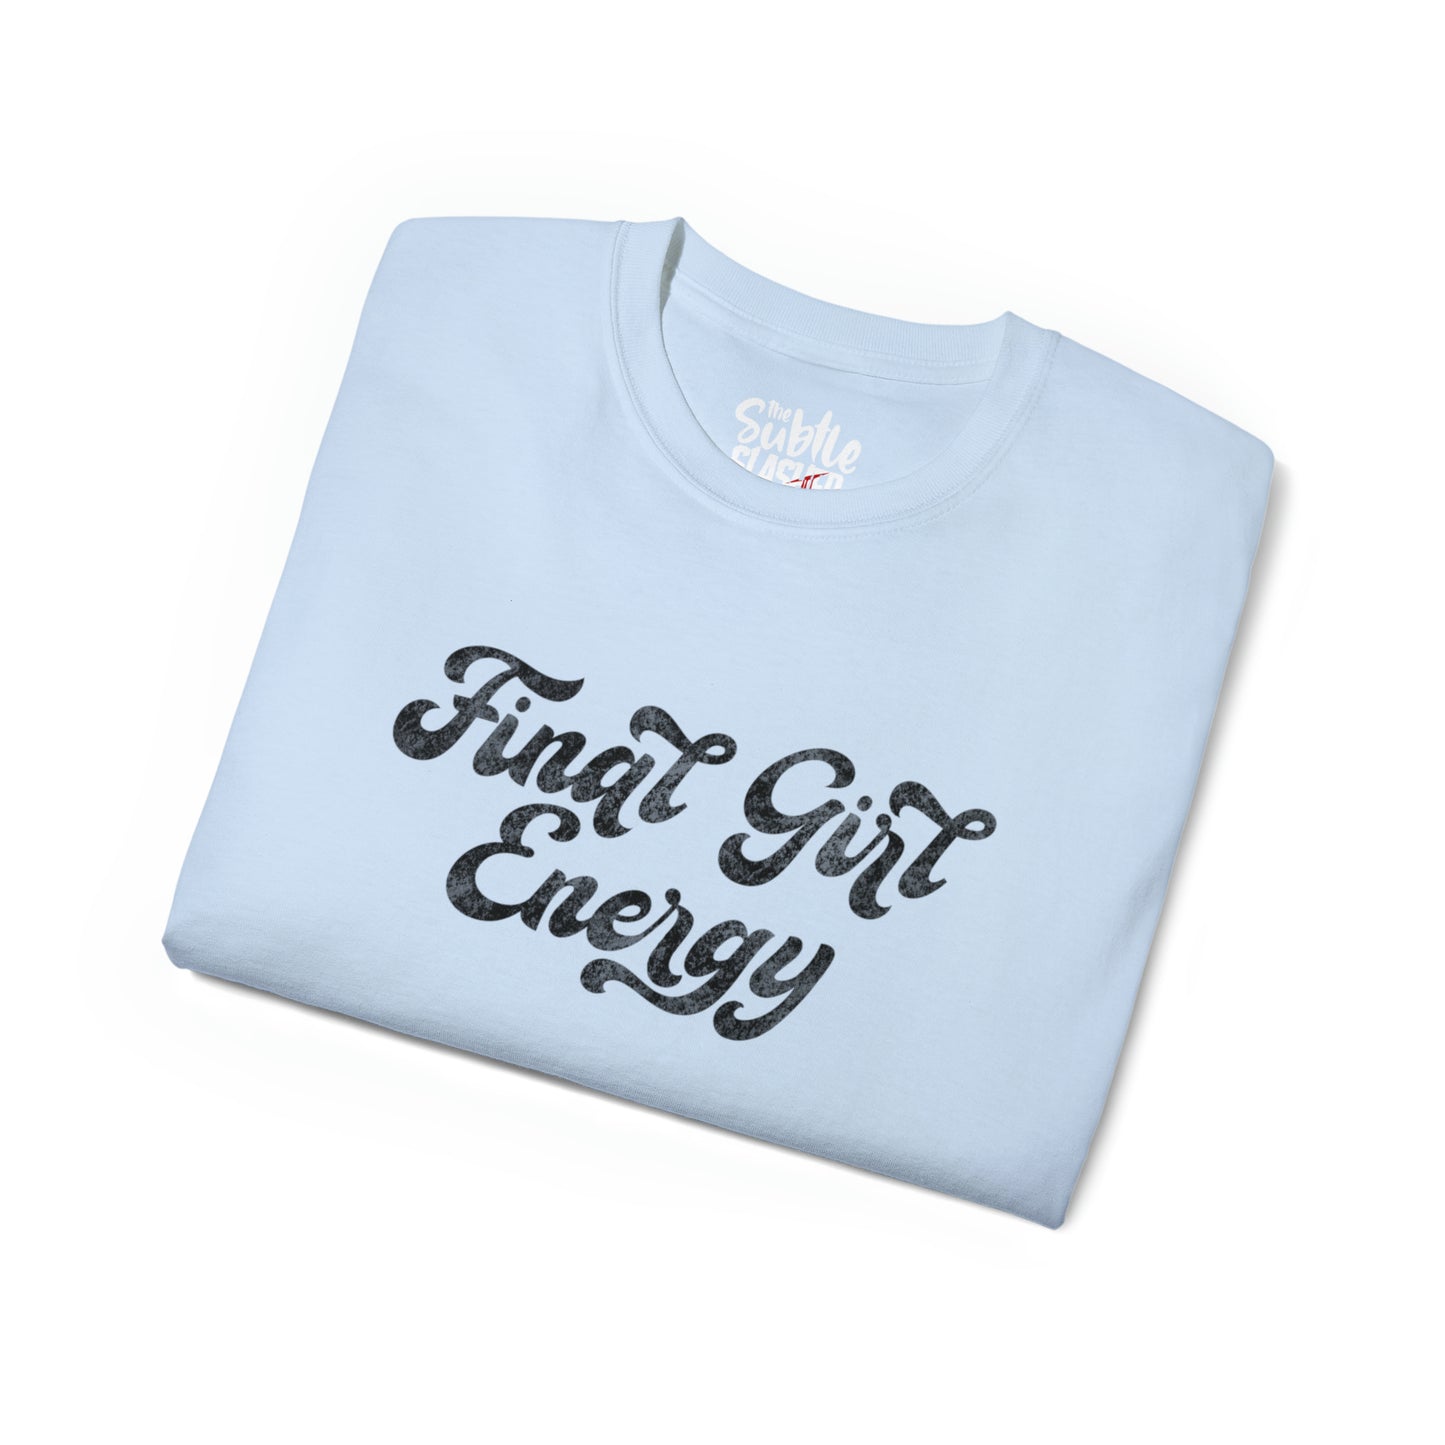 Final Girl Energy Tee